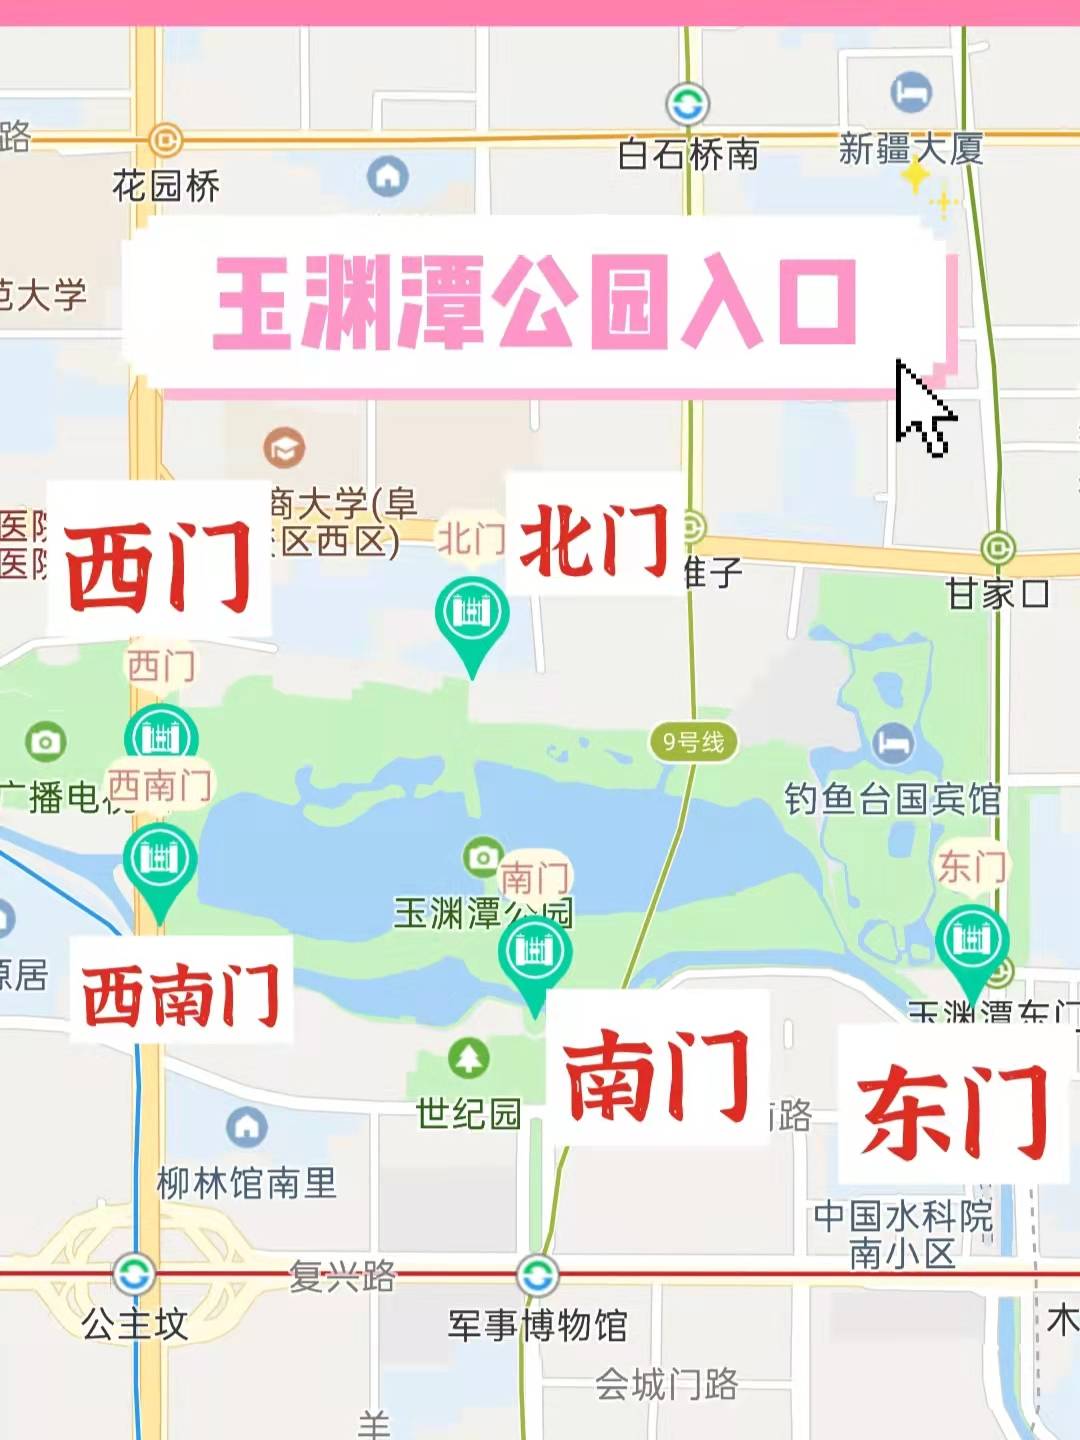 北京玉渊潭公园路线图片